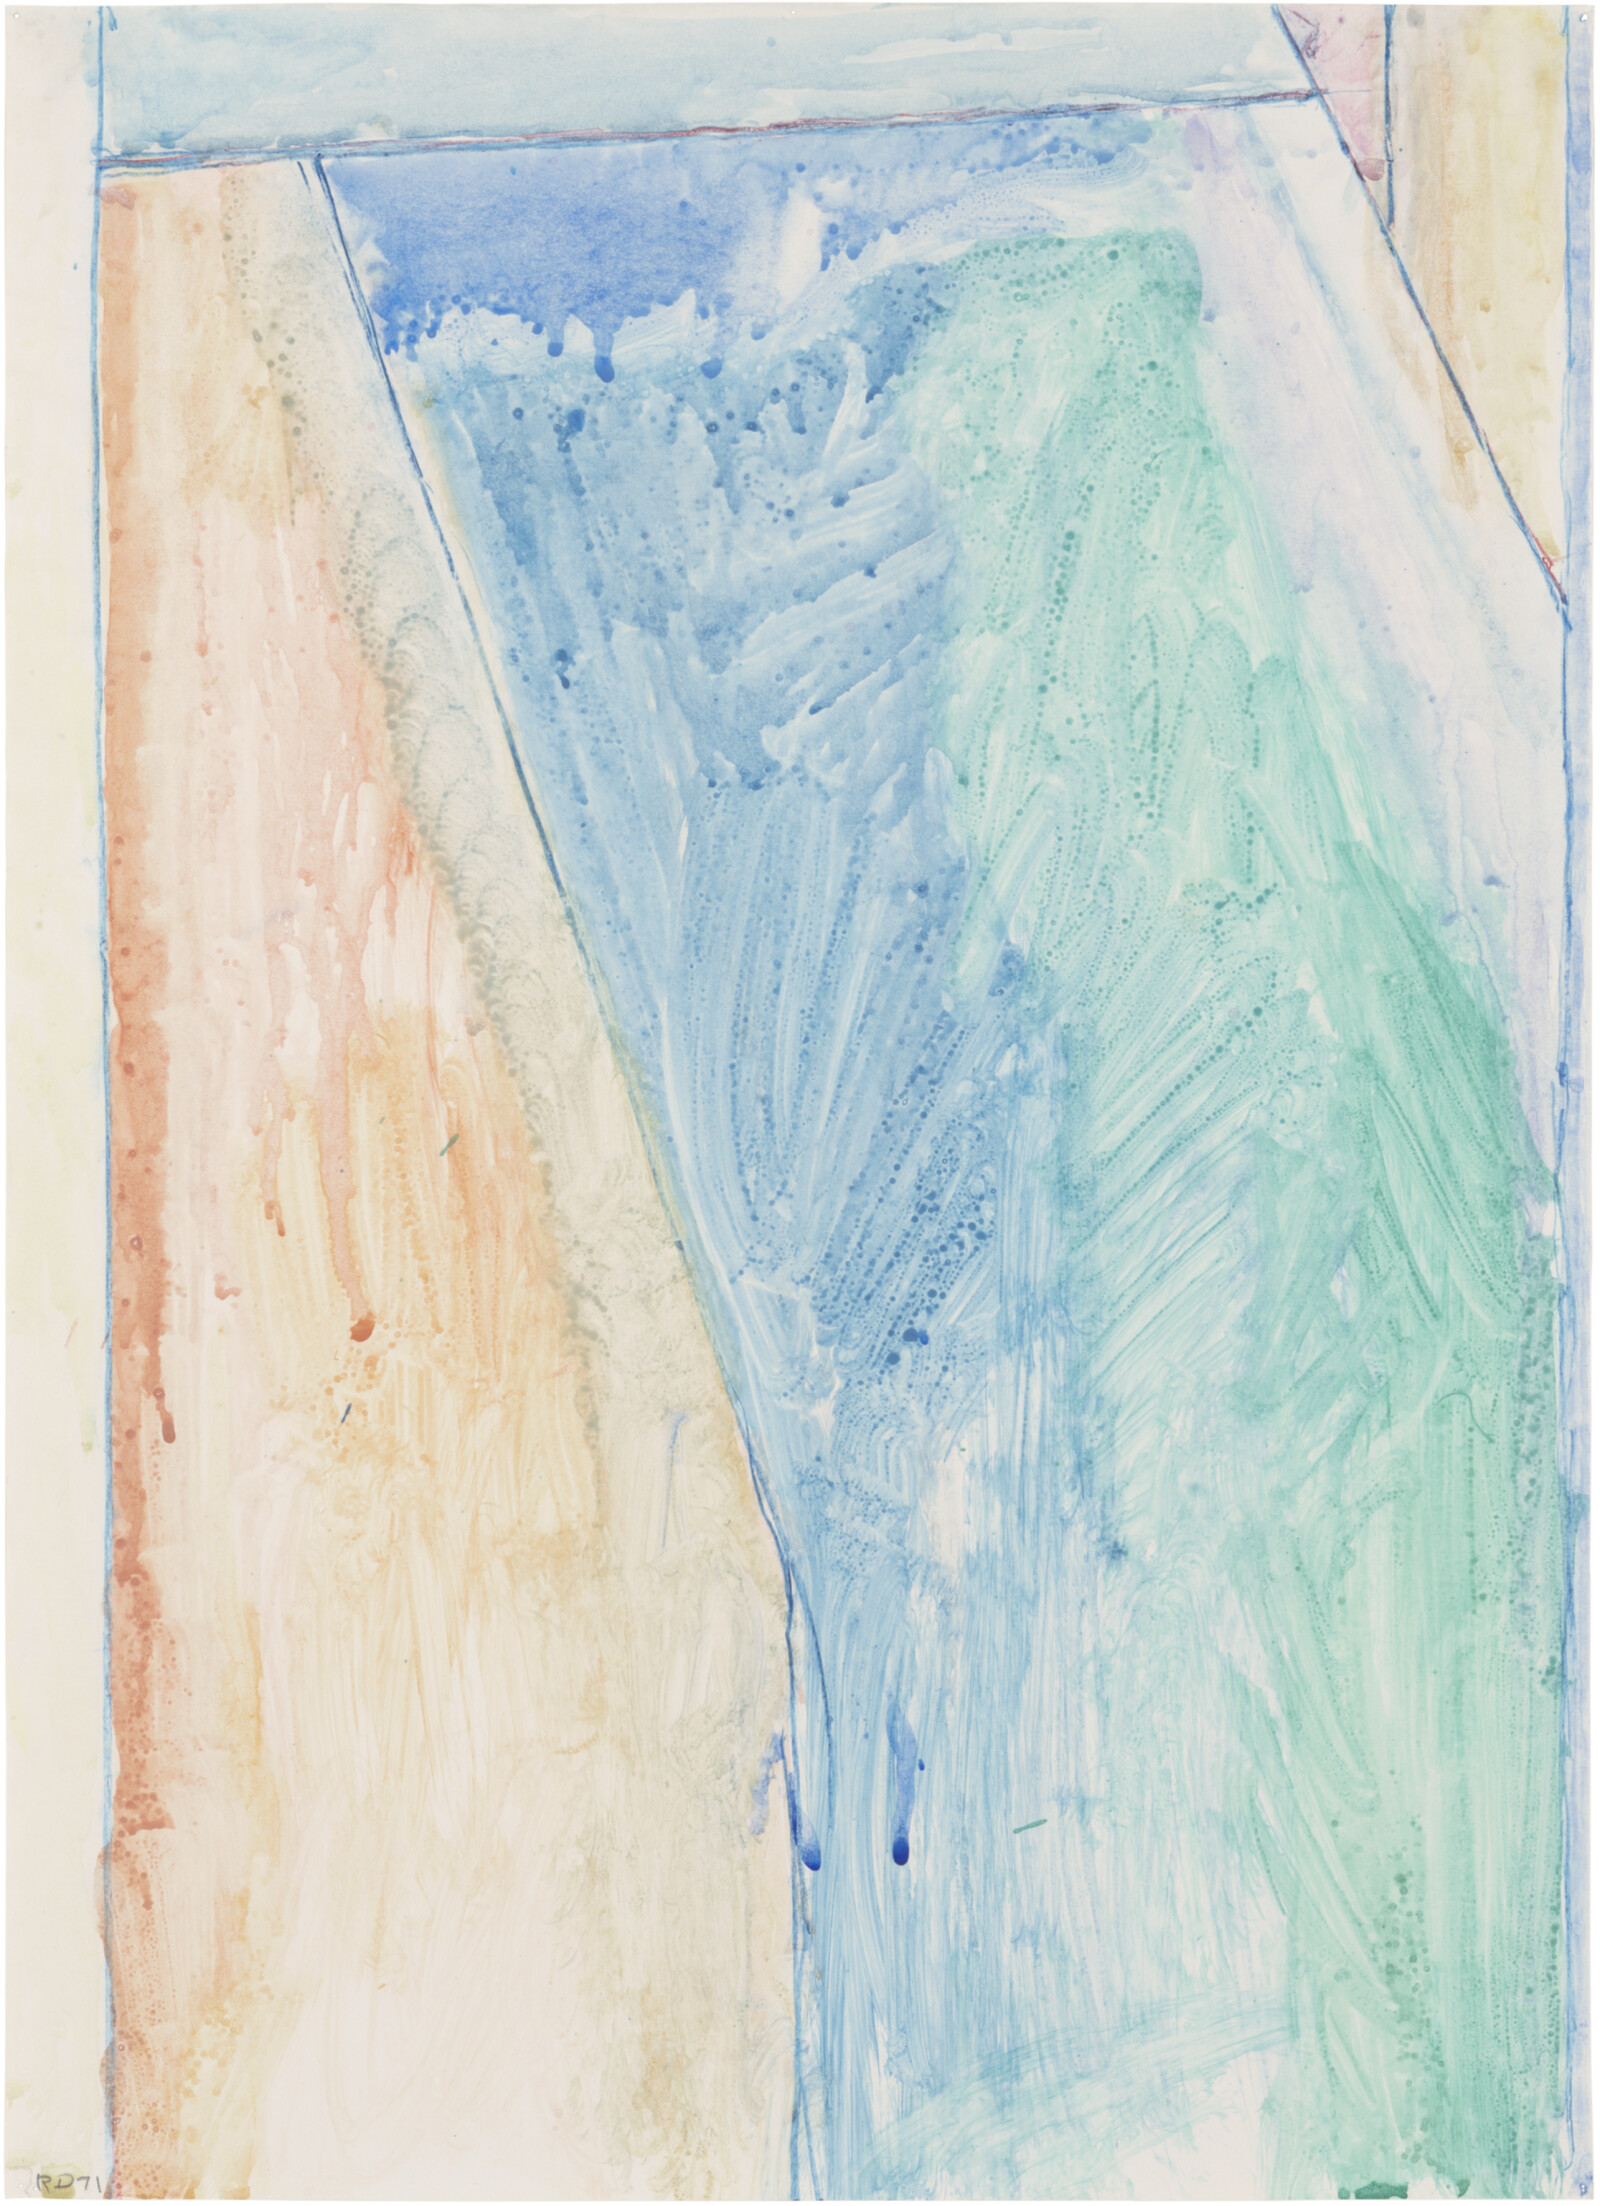 Richard Diebenkorn: Drawings, 1970–71, "Ocean Park"